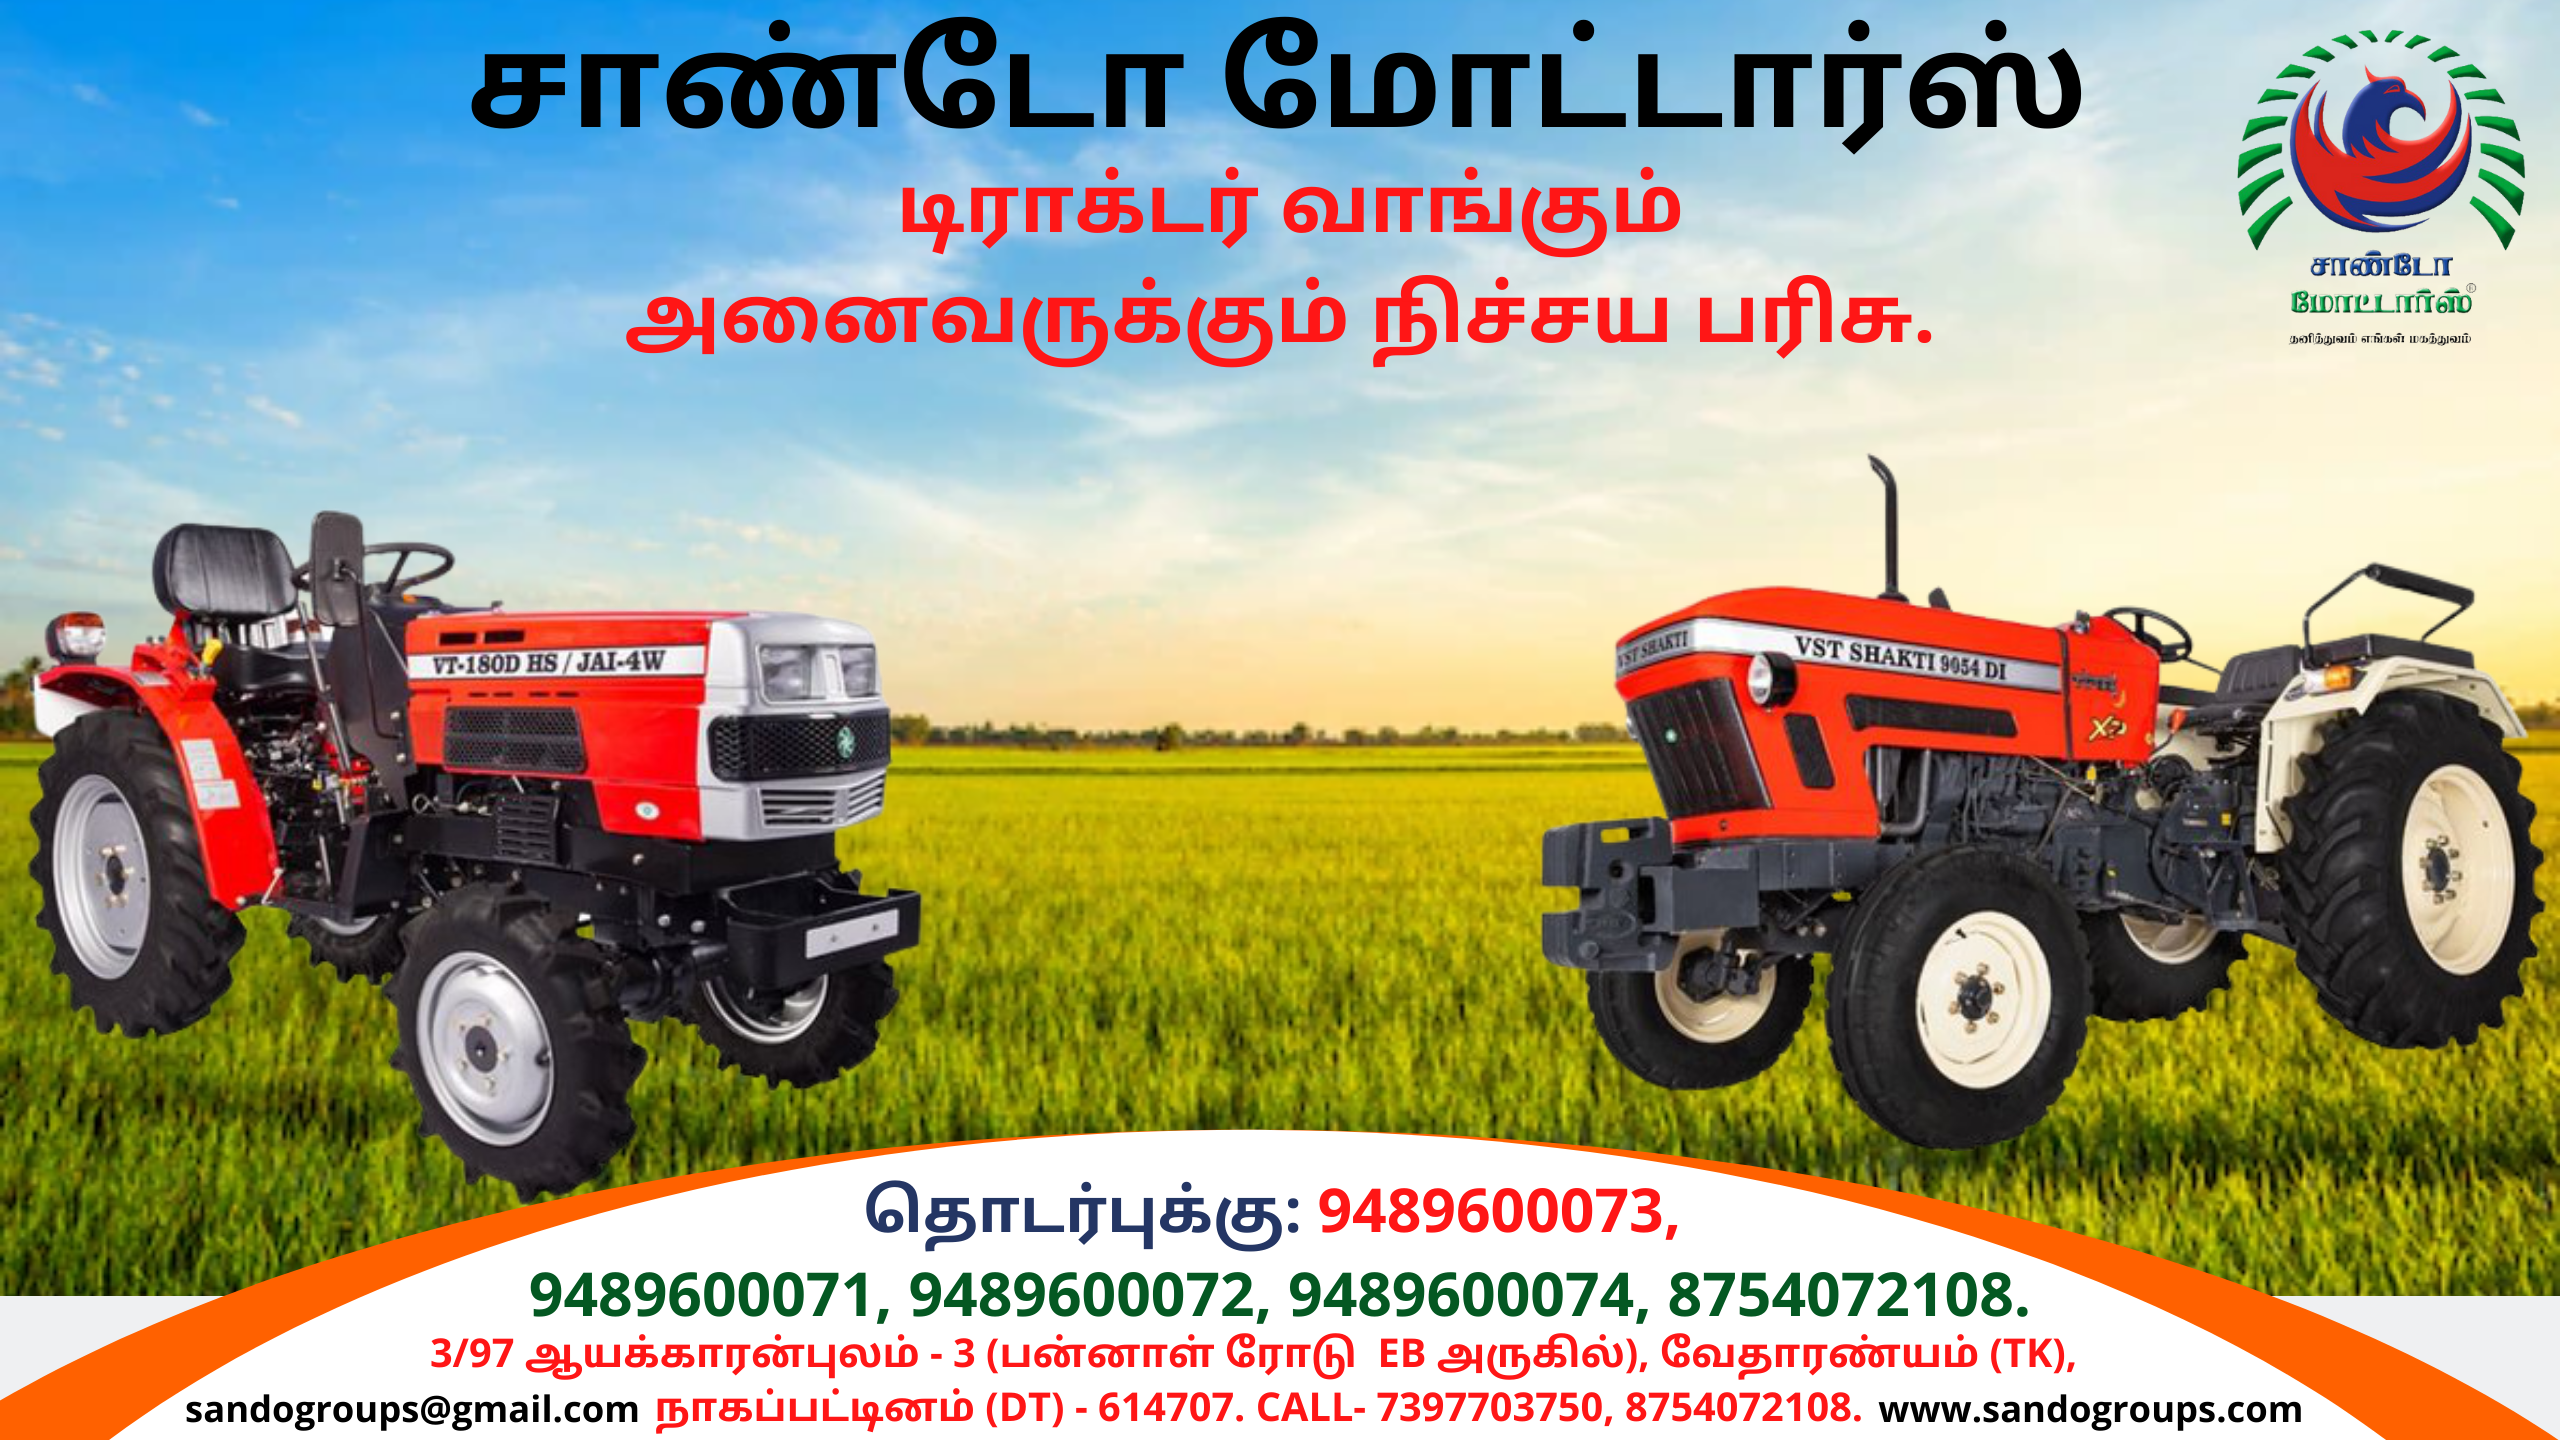 Tractor sales